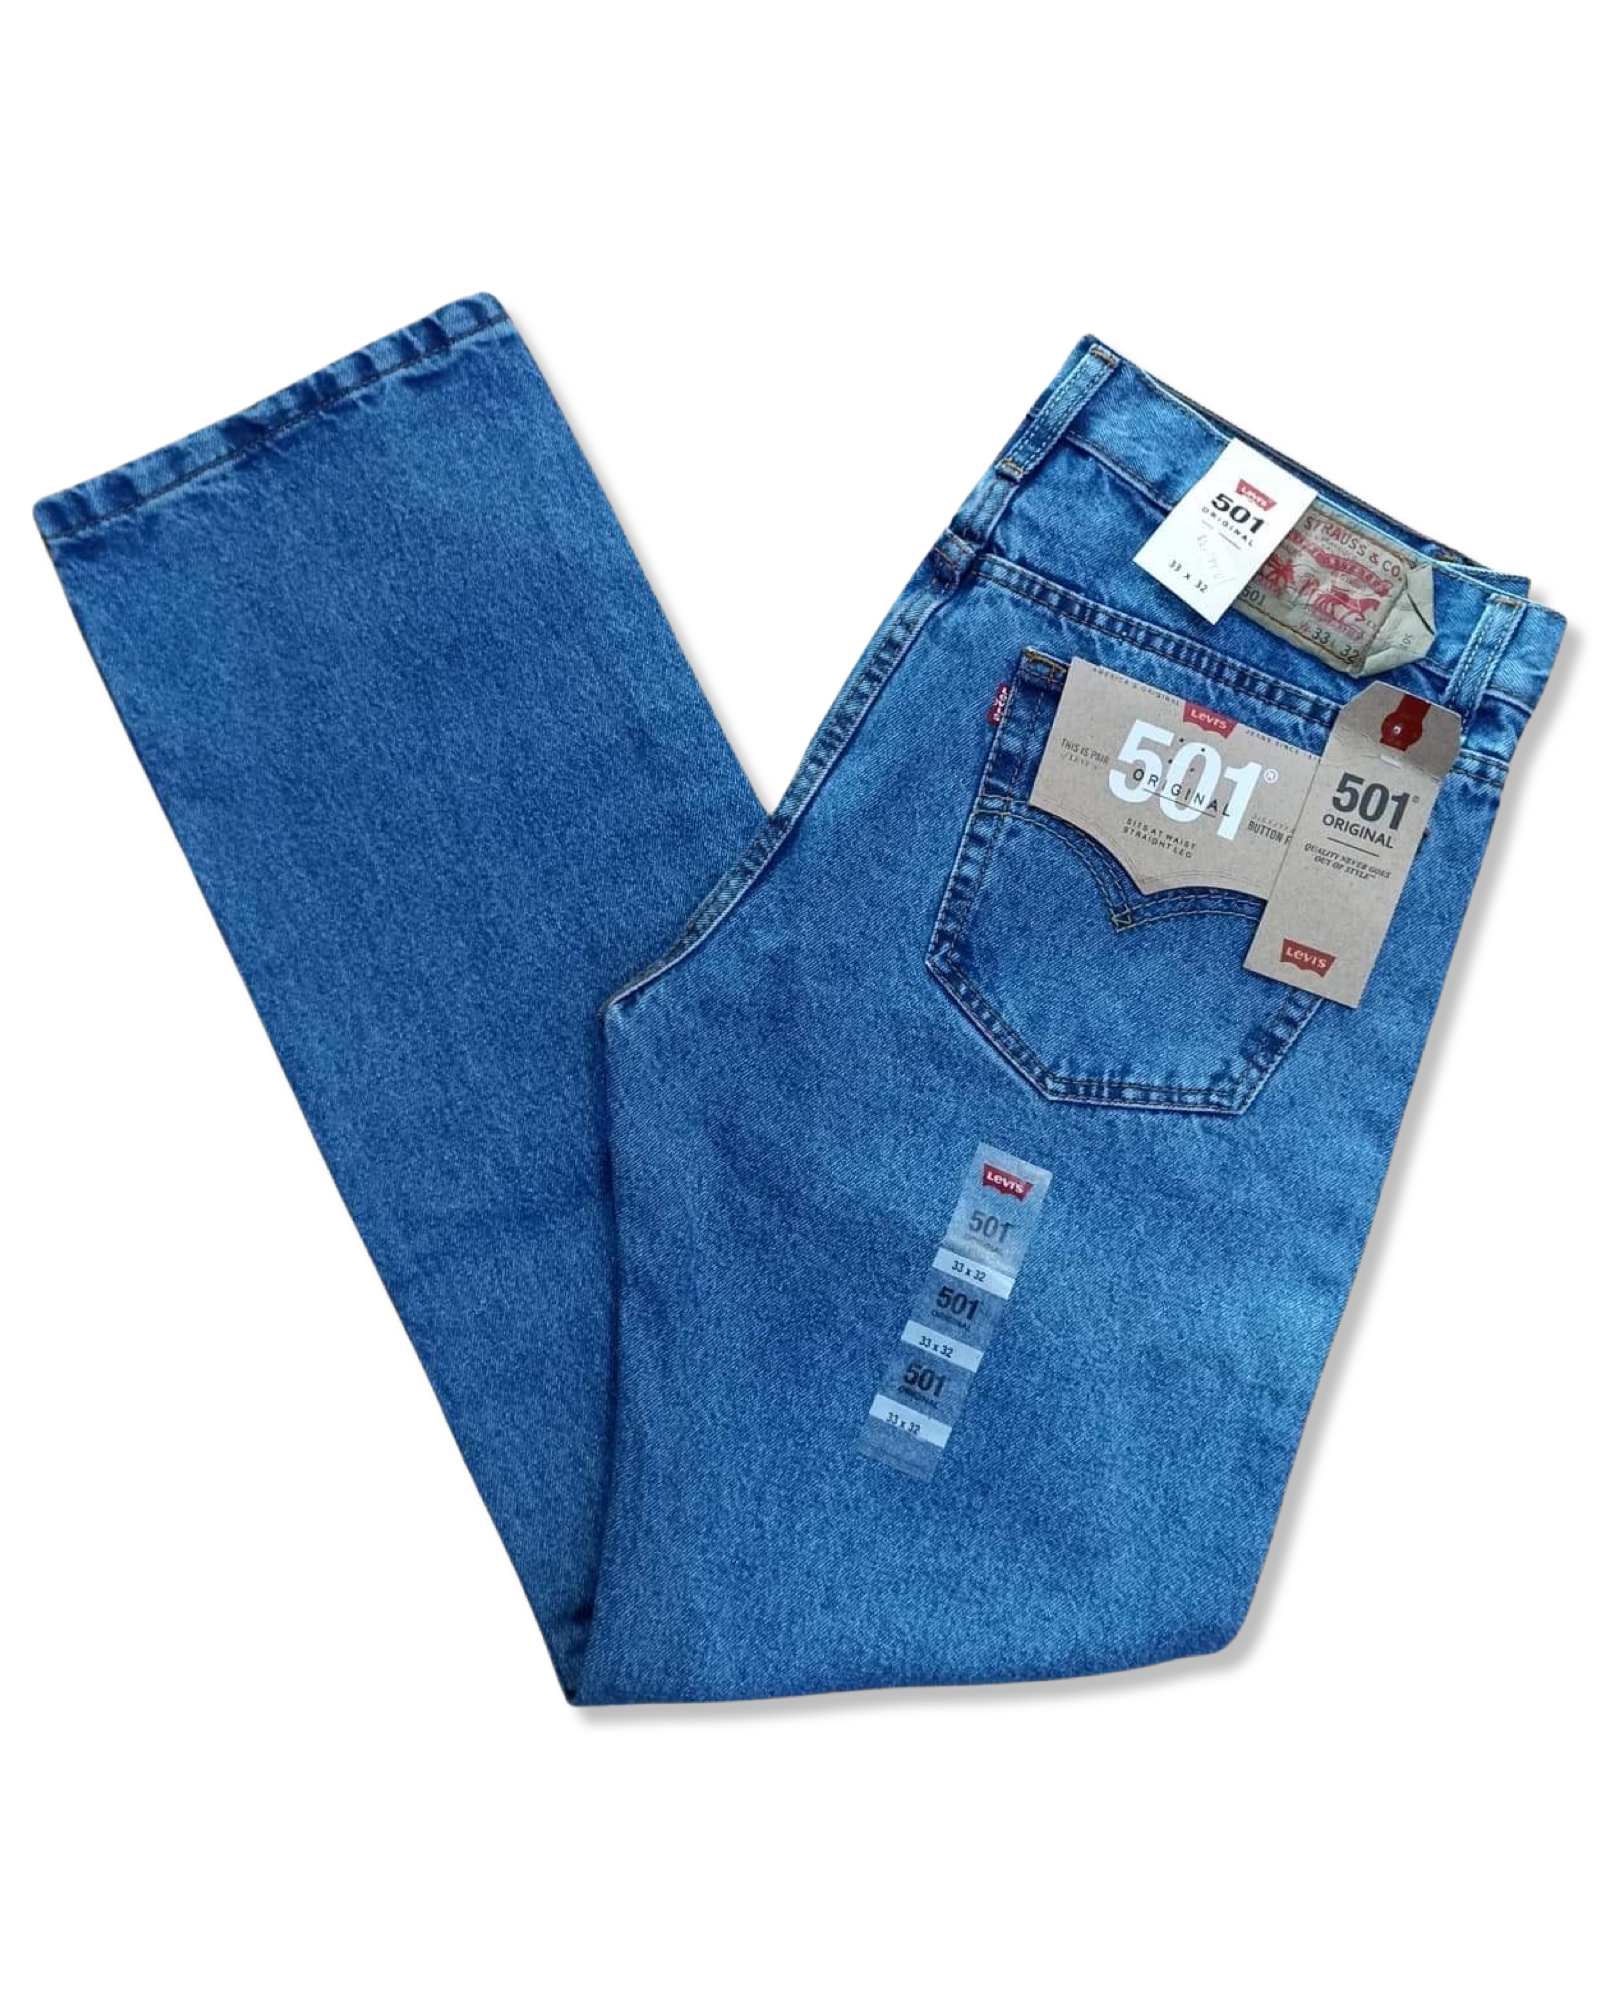 Pantalón LEVIS 501 color azul claro – vaquero